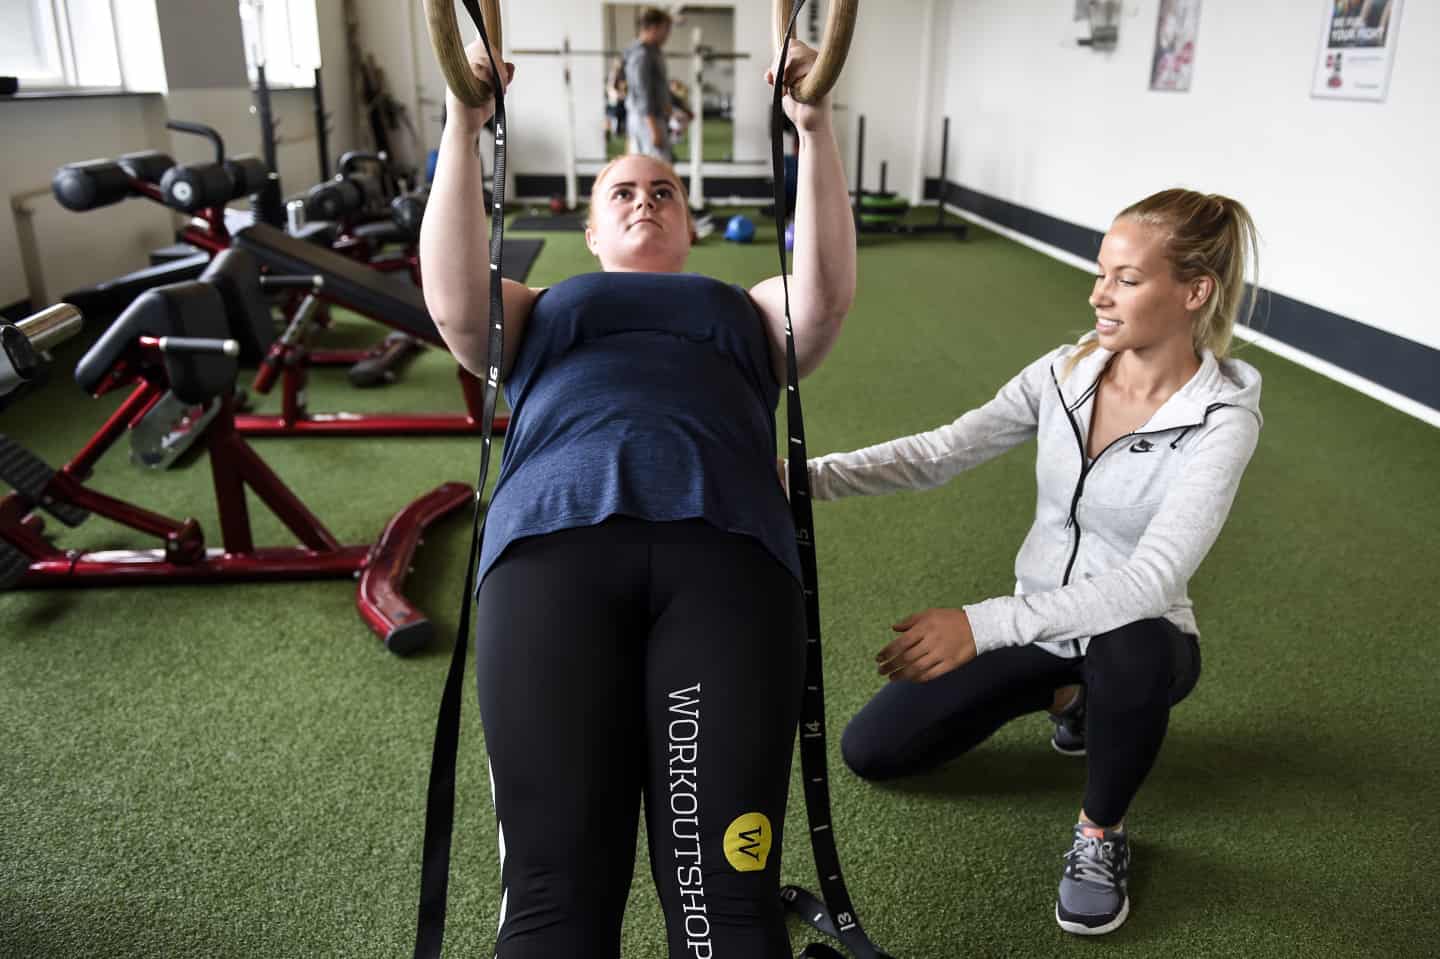 Fitness Studiet vil mere end træning ugeavisen.dk